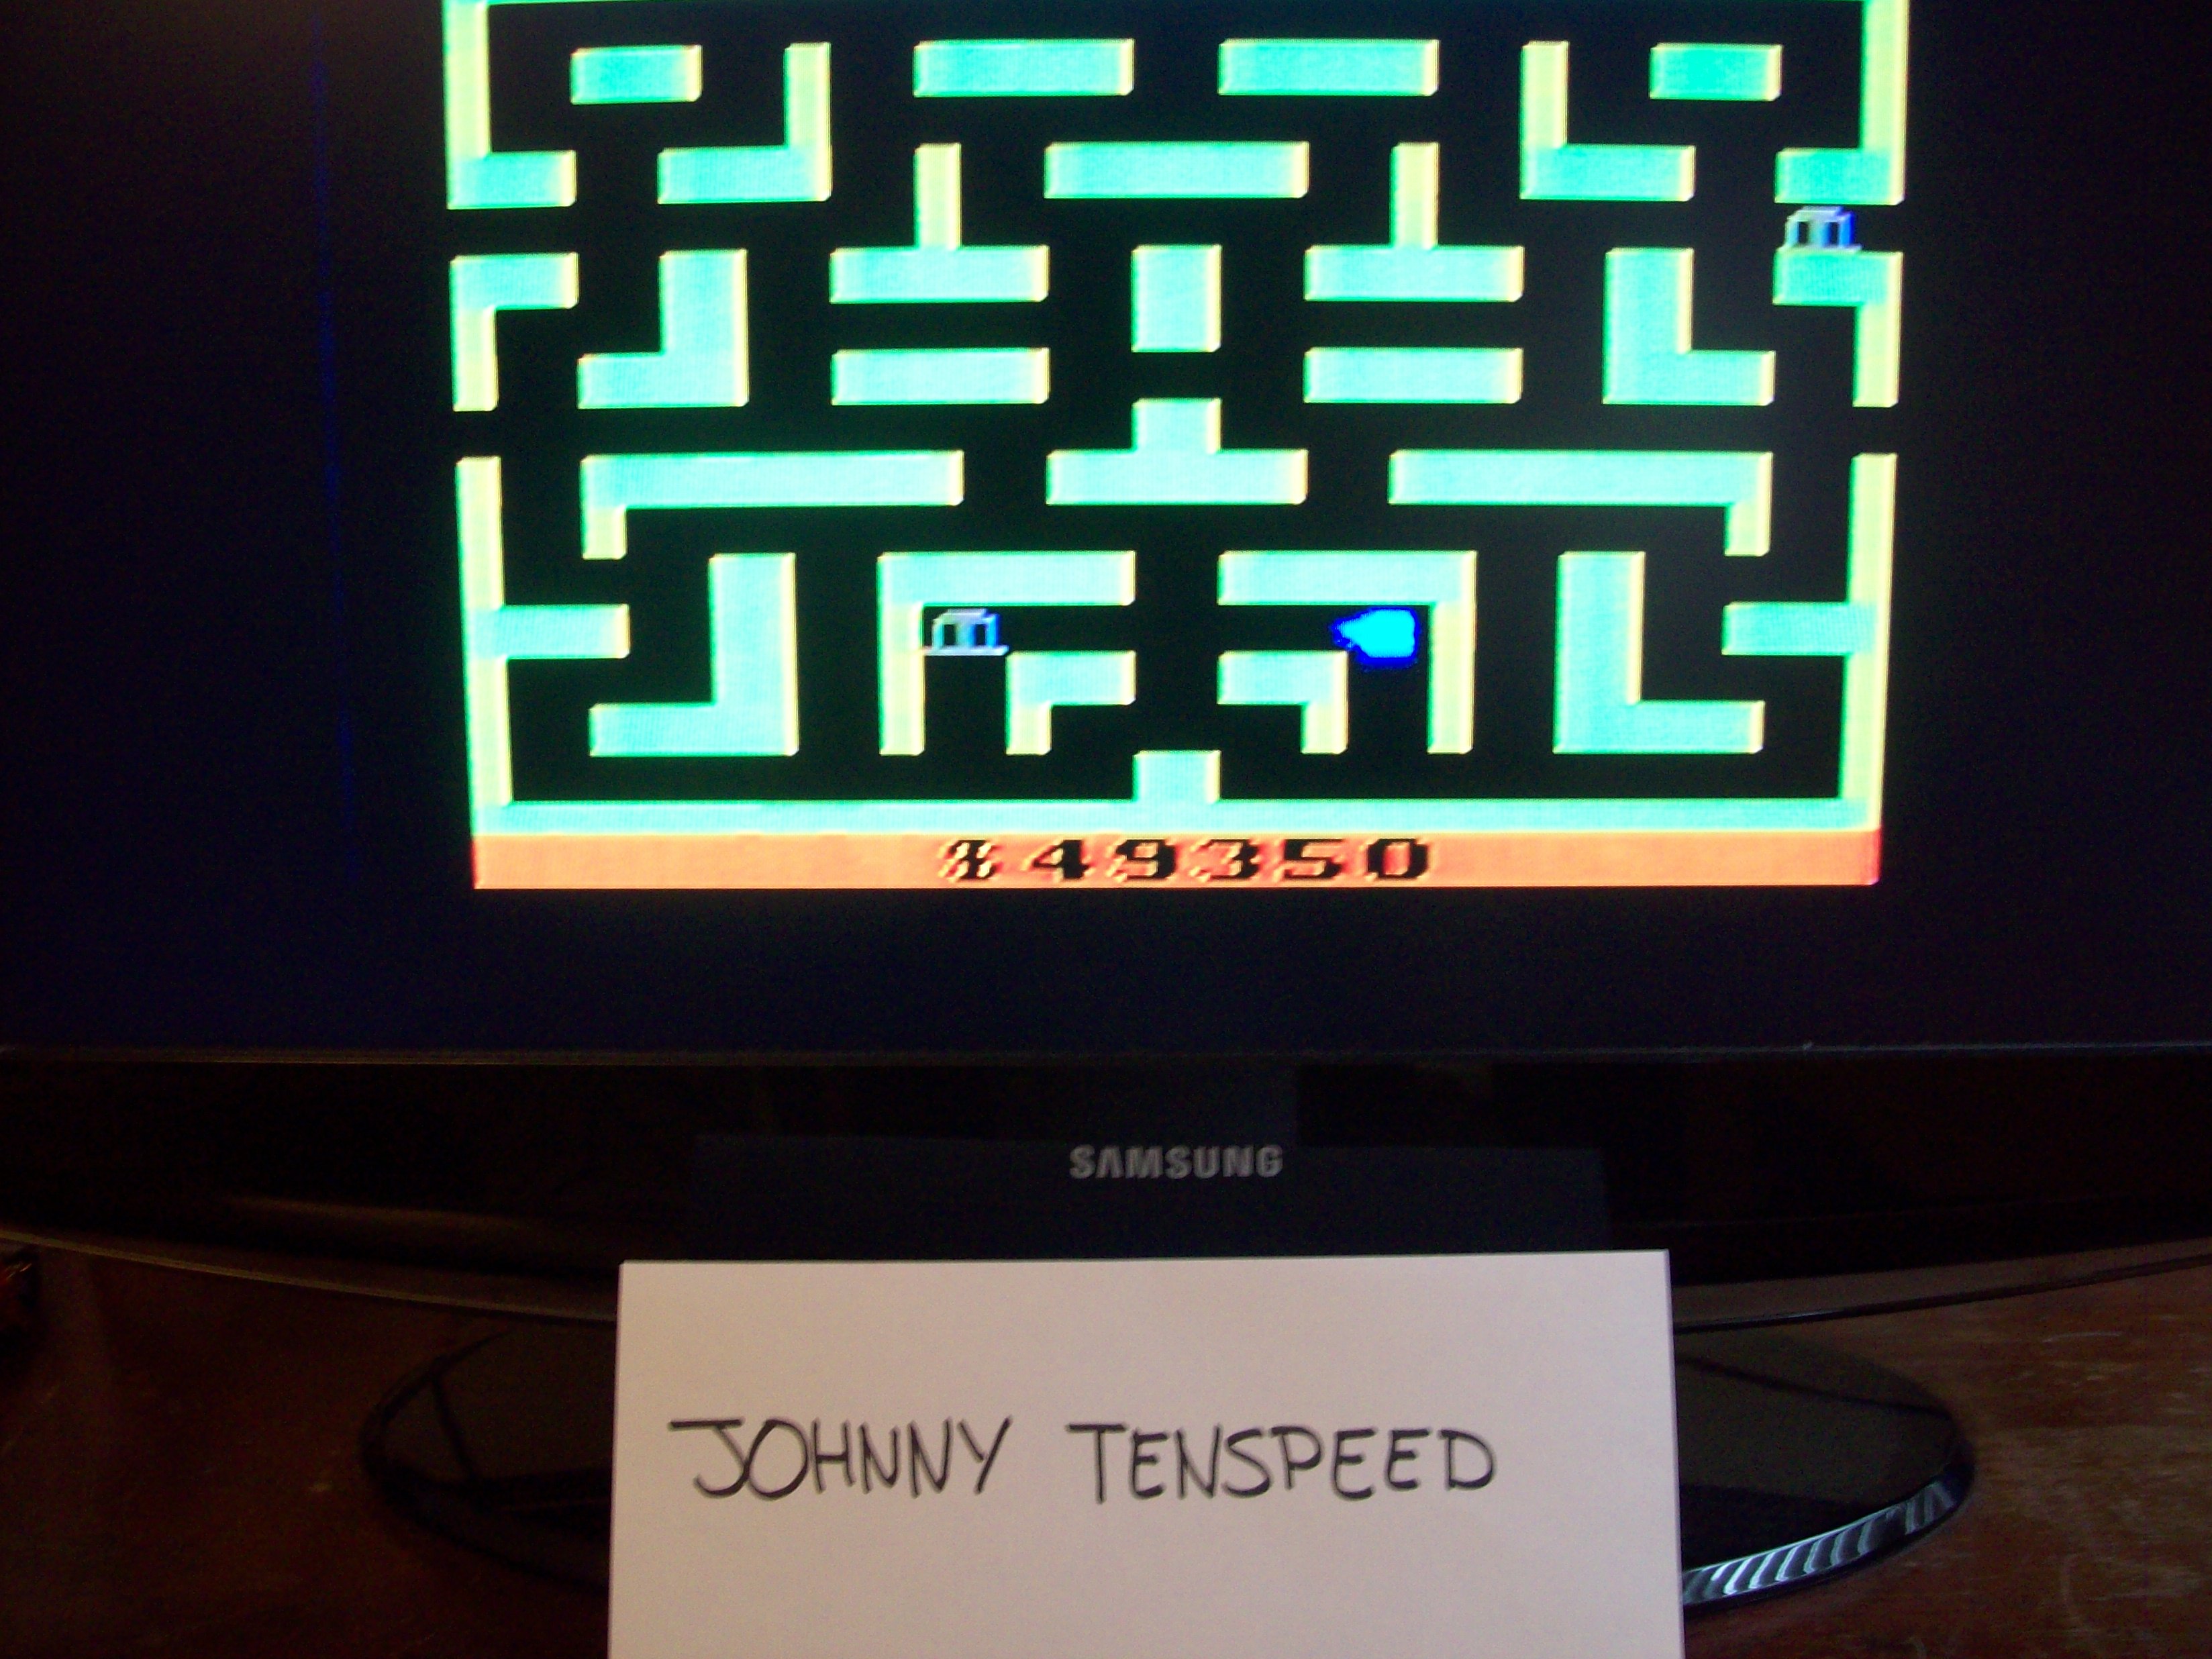 JohnnyTenspeed: Bank Heist (Atari 2600 Novice/B) 49,350 points on 2015-02-06 12:05:43